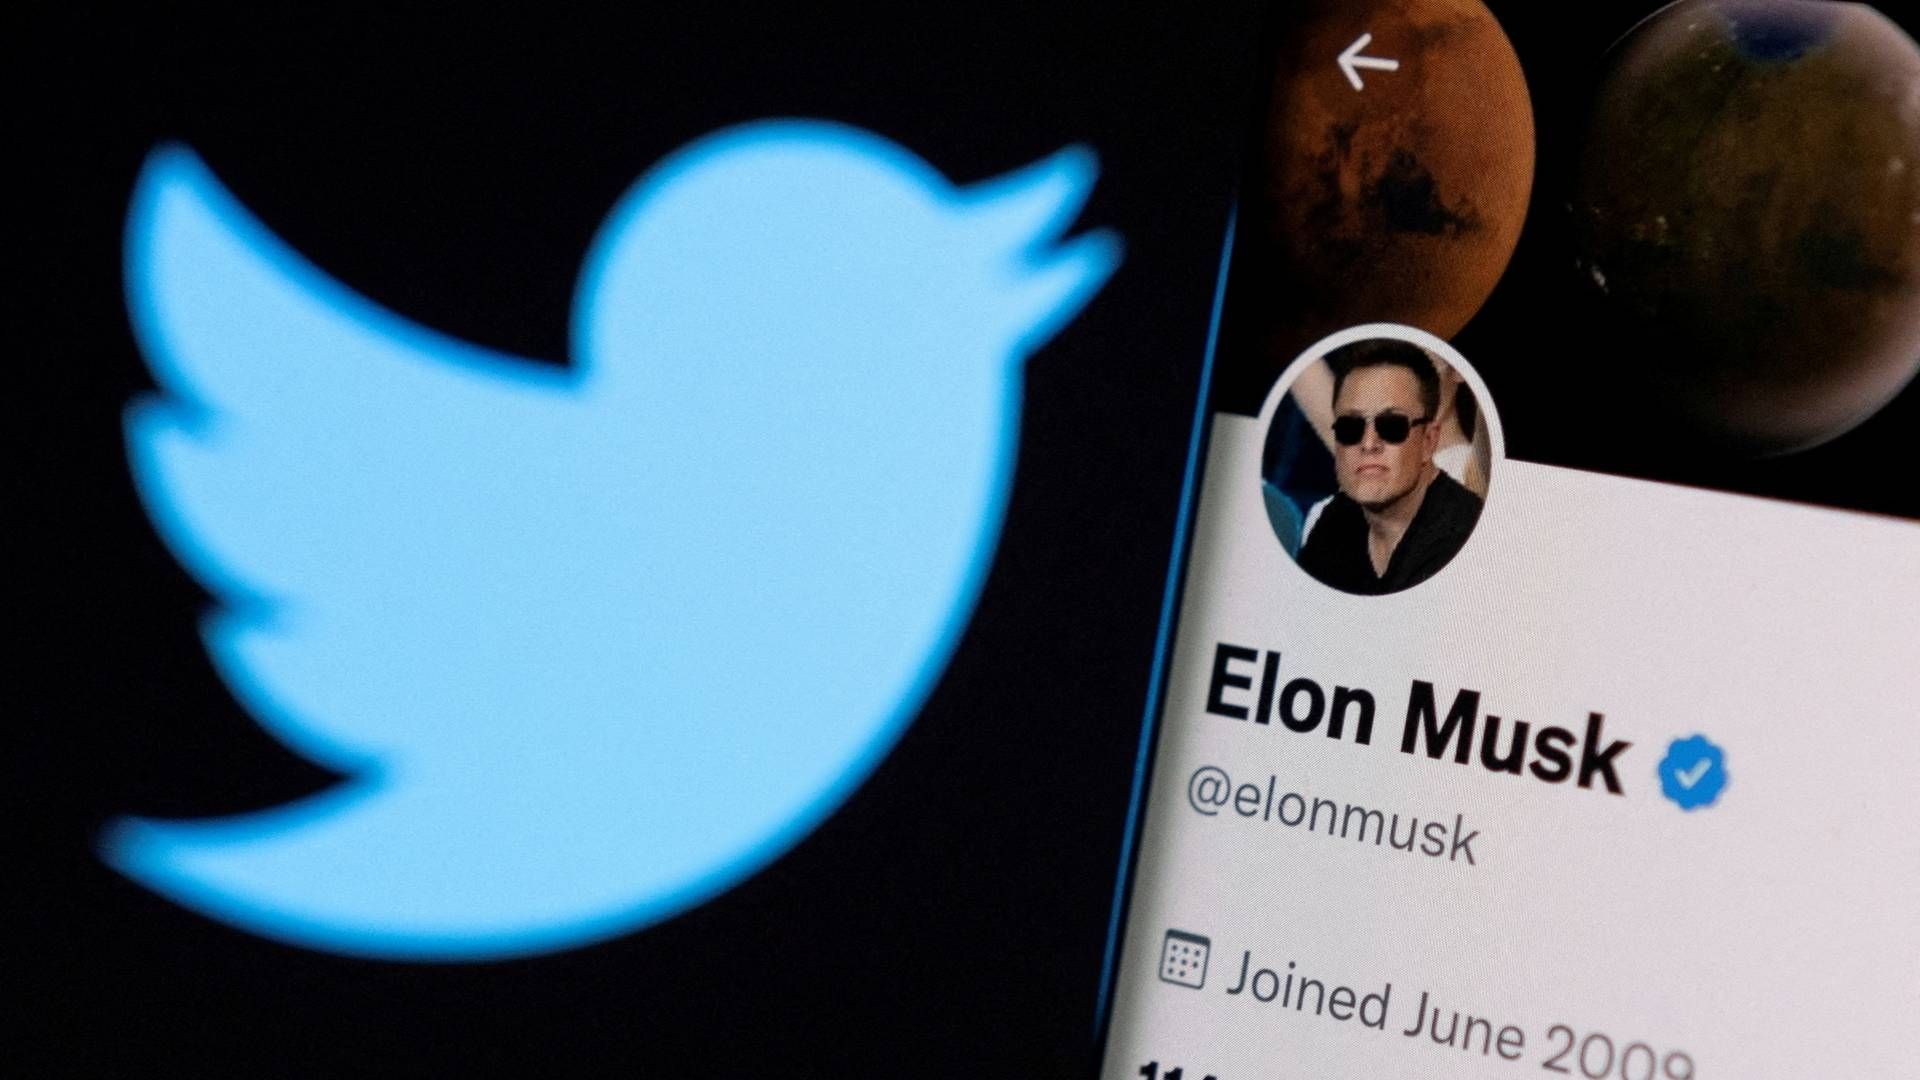 Det kan snart blive afgjort, om Elon Musk lykkes med at købe Twitter. | Foto: Dado Ruvic/REUTERS / X02714